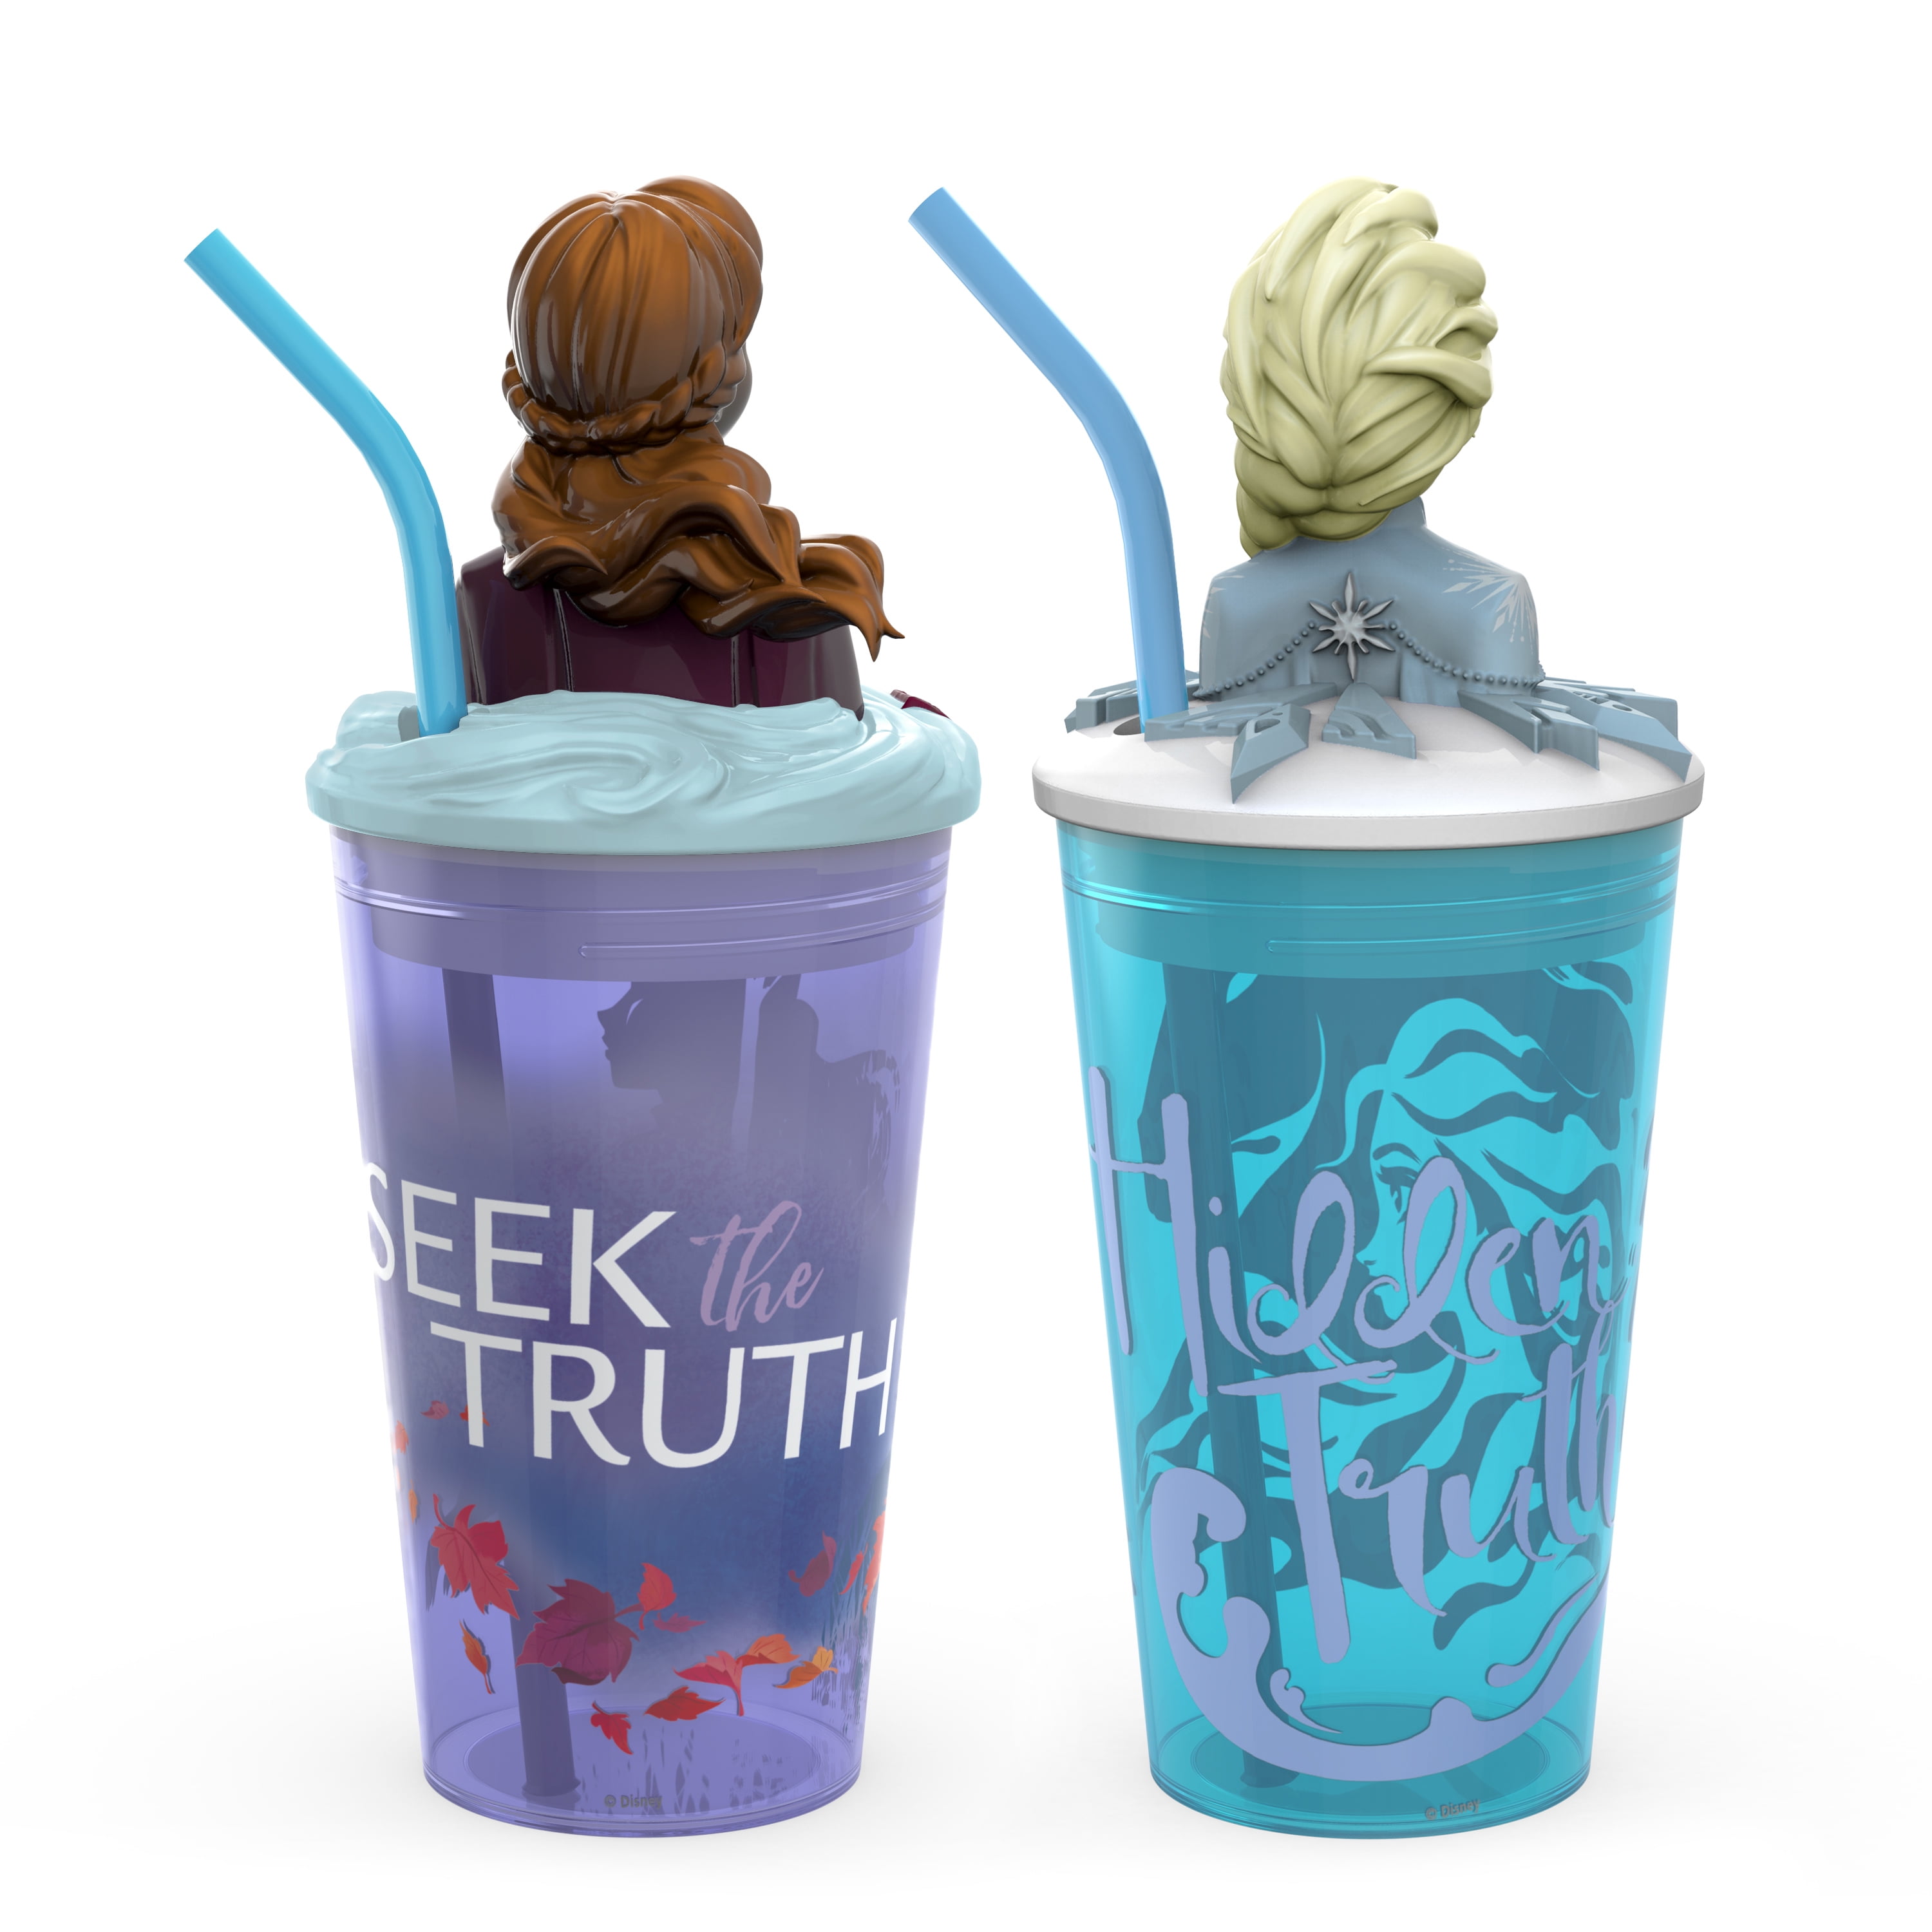 Frozen cup, handmade frozen 2 tumbler, tumbler for kids